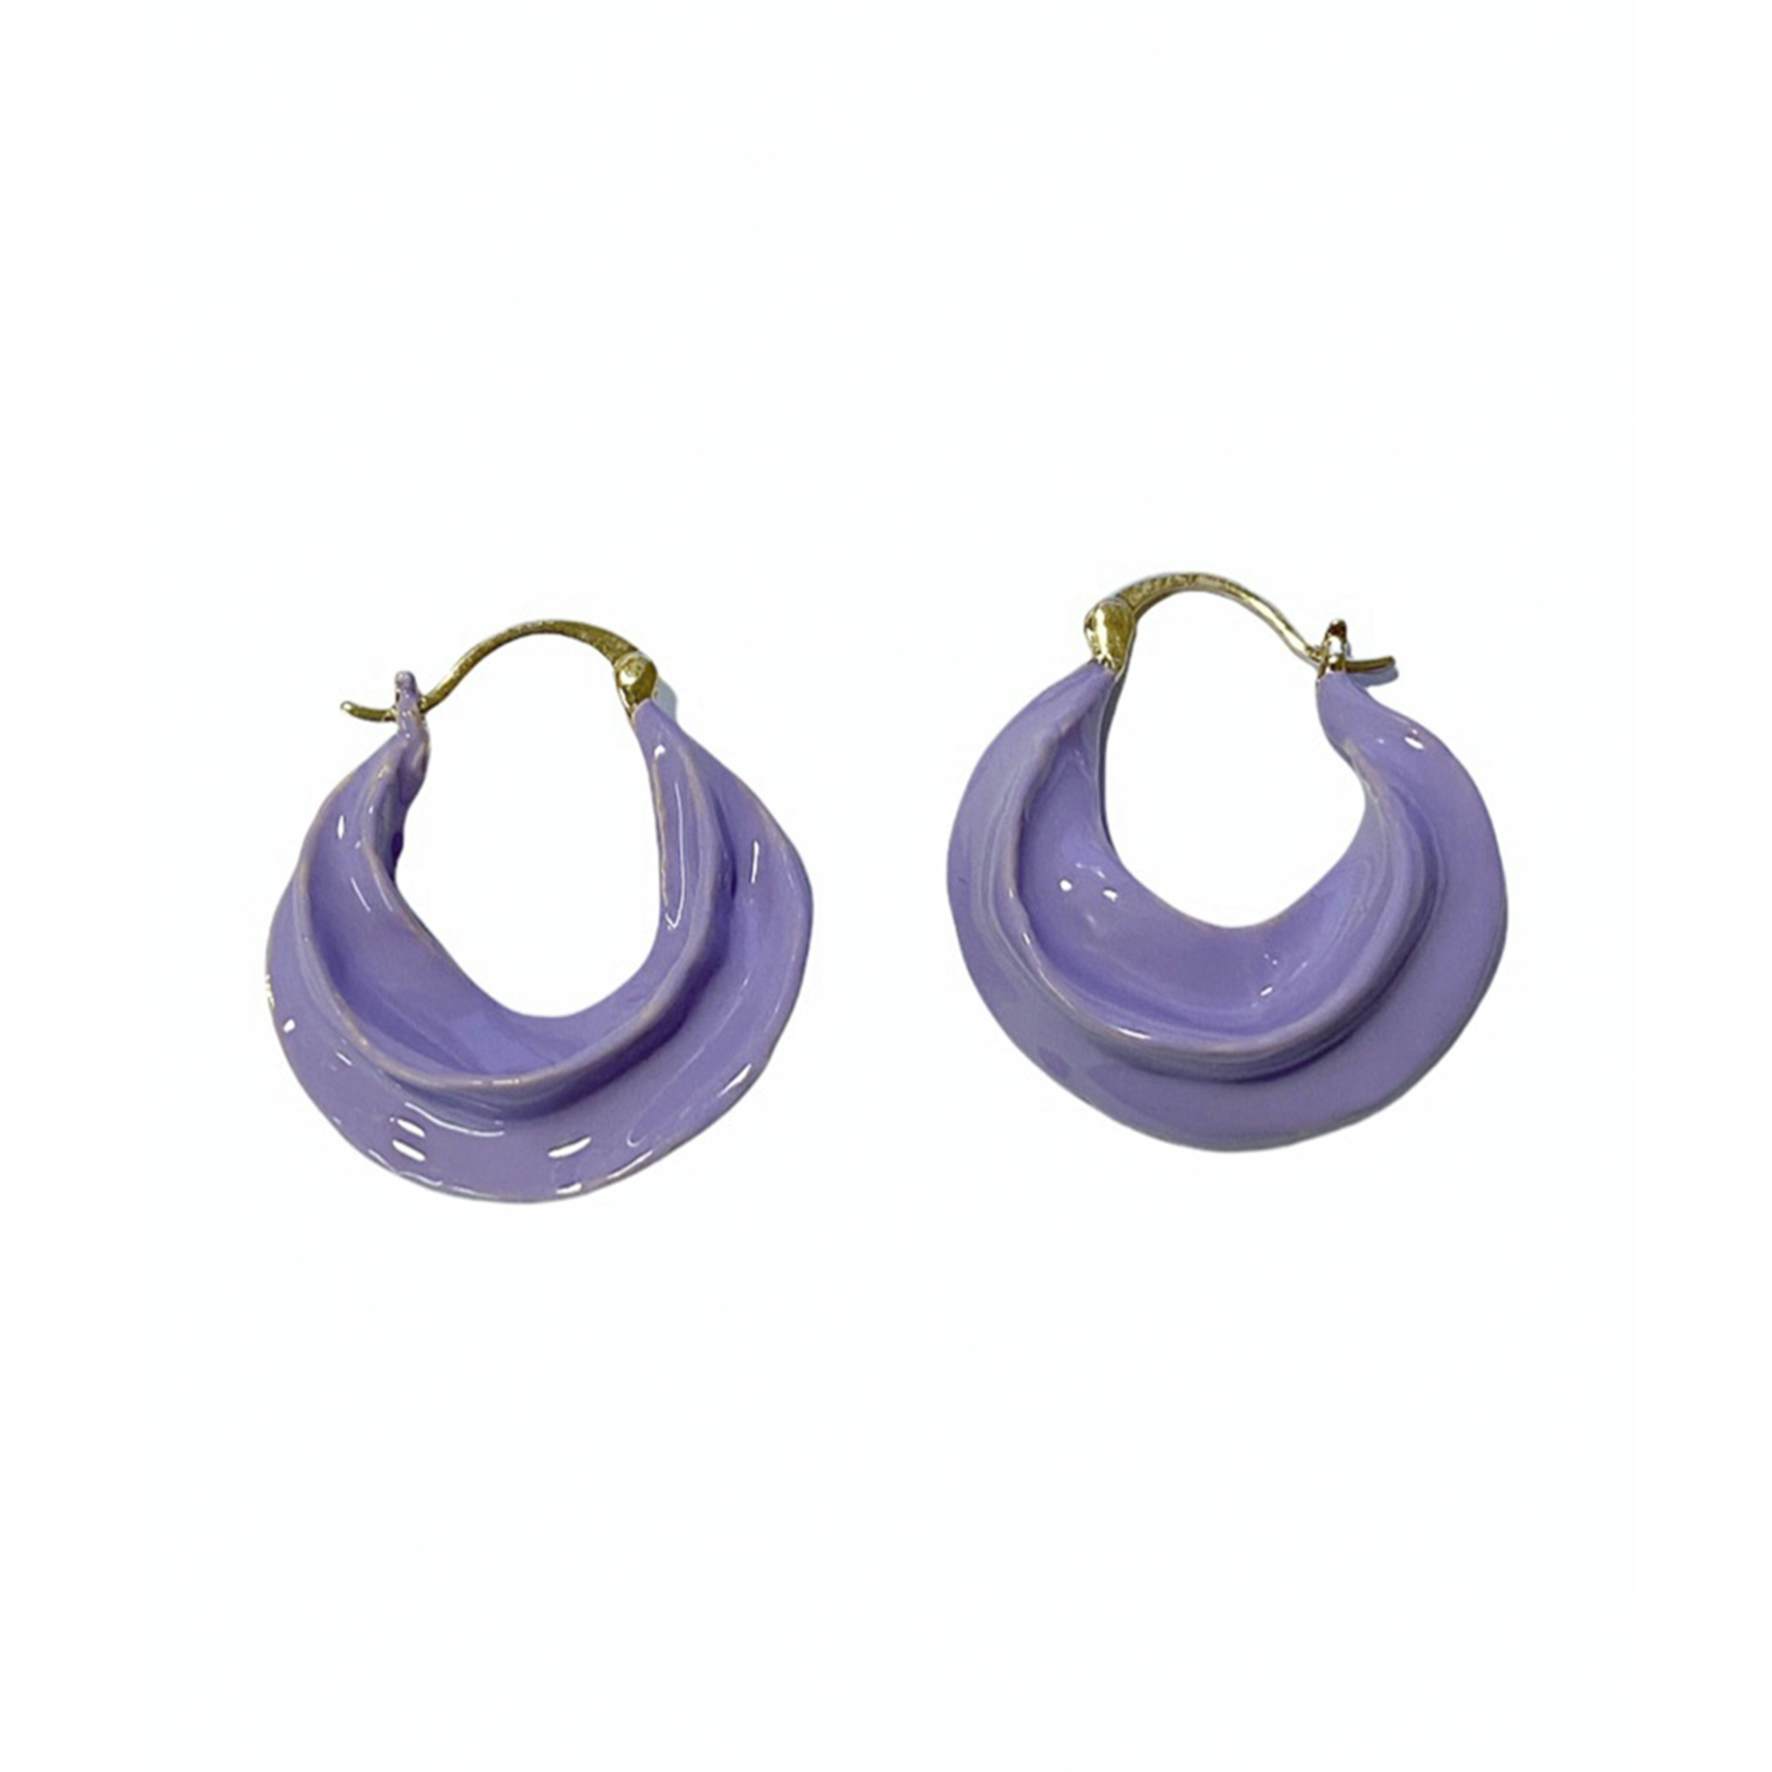 Africa Enamel Earrings Lavender von Pico in Vergoldet-Silber Sterling 925